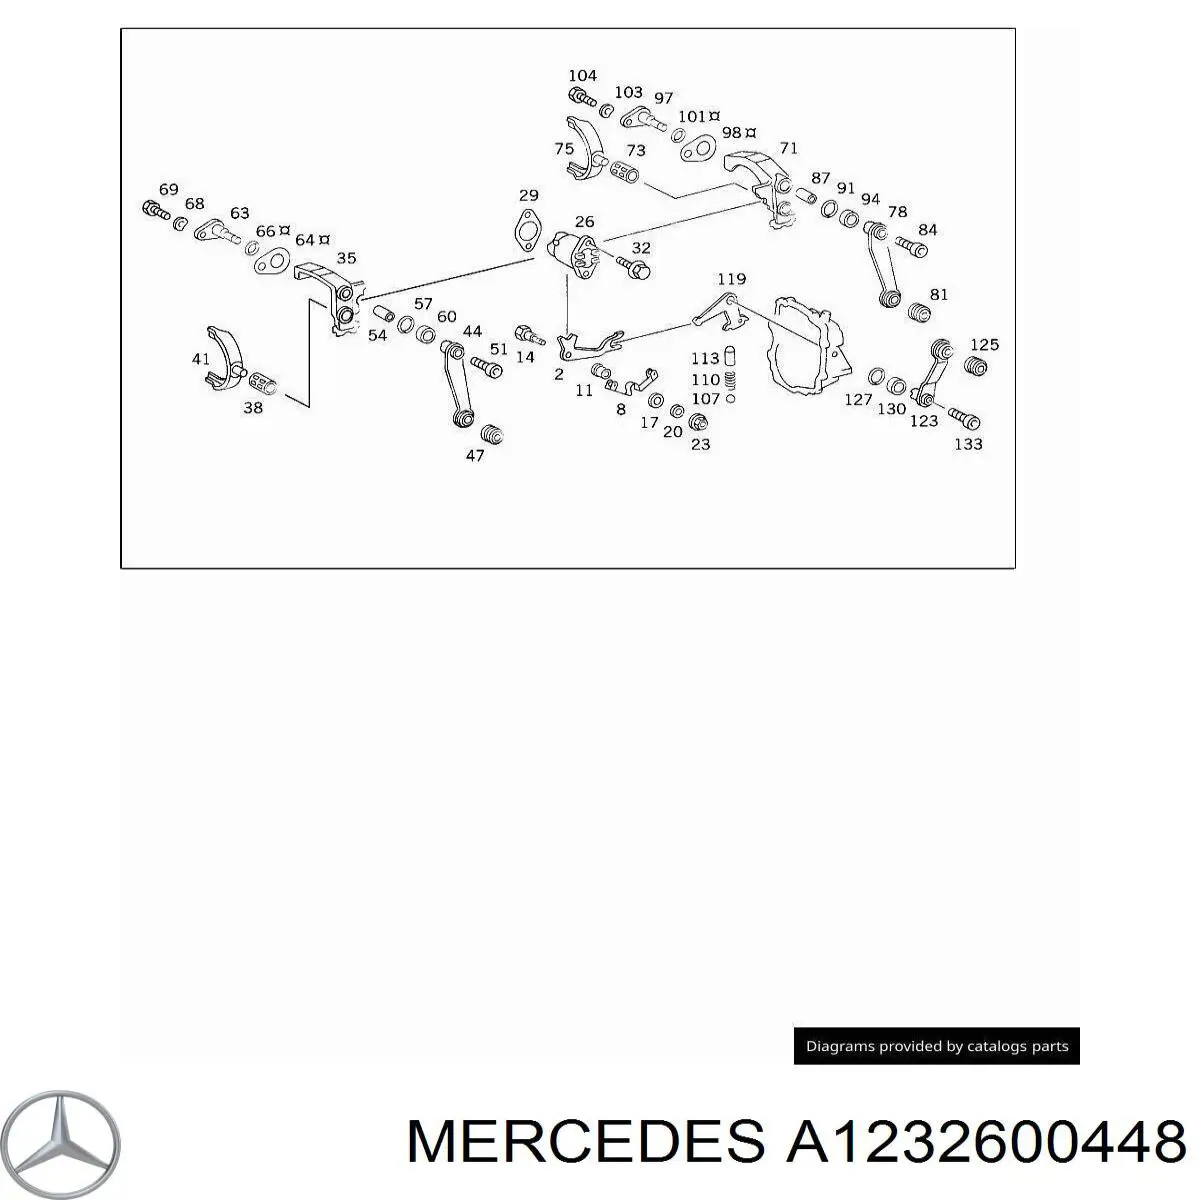 A1232600448 Mercedes шестерня спидометра ведомая